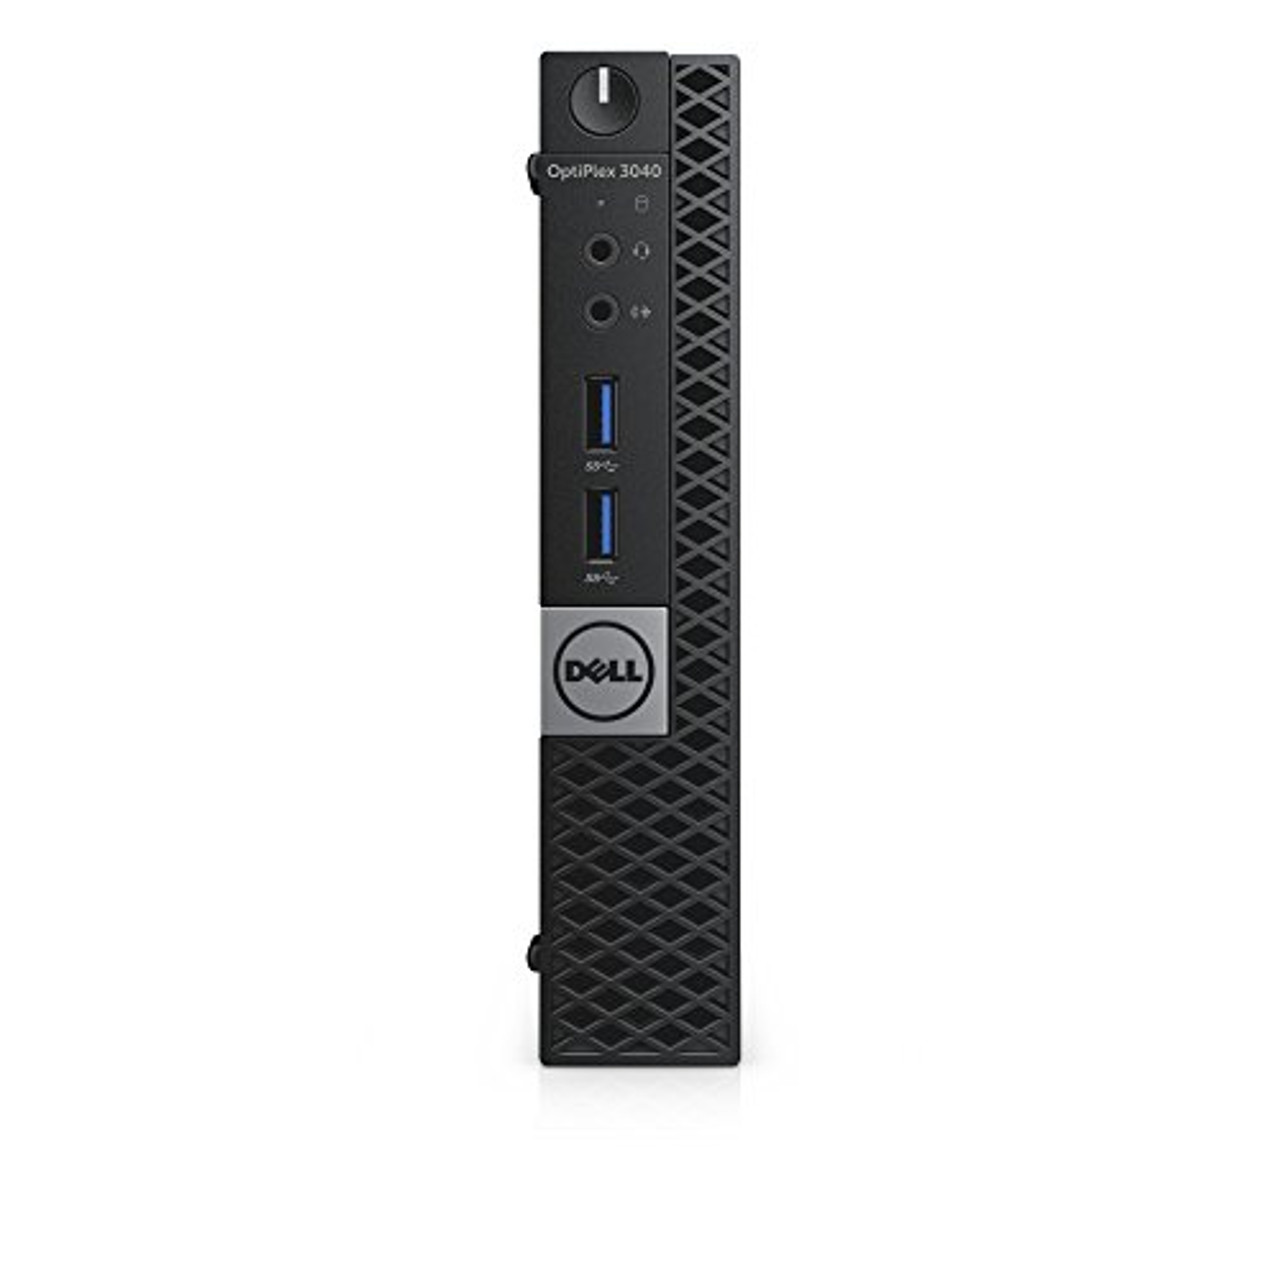 Dell Optiplex 3040 Desktop Intel Core i5 2.50 GHz 8 GB 500 GB Windows 10 Pro | Refurbished